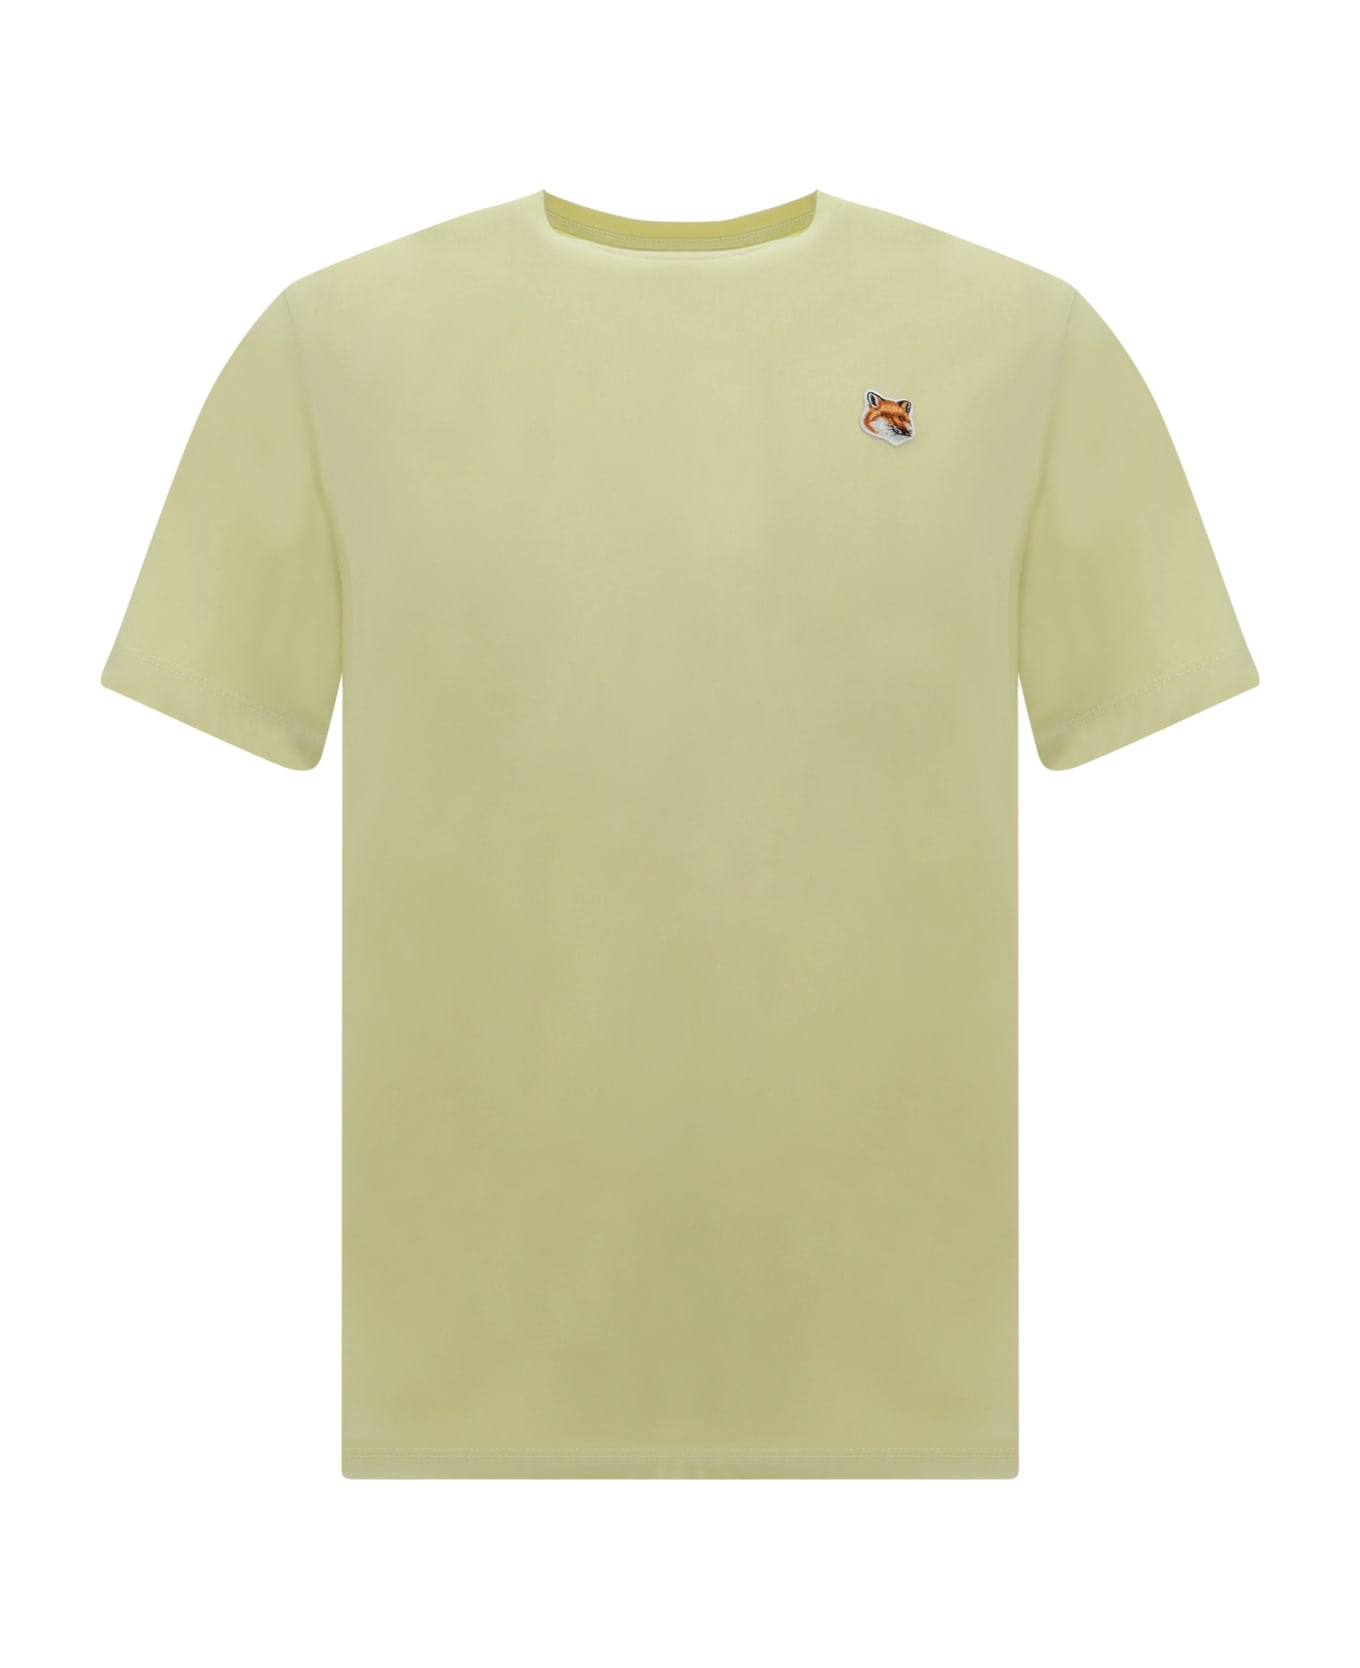 Maison Kitsuné T-shirt - Chalk Yellow